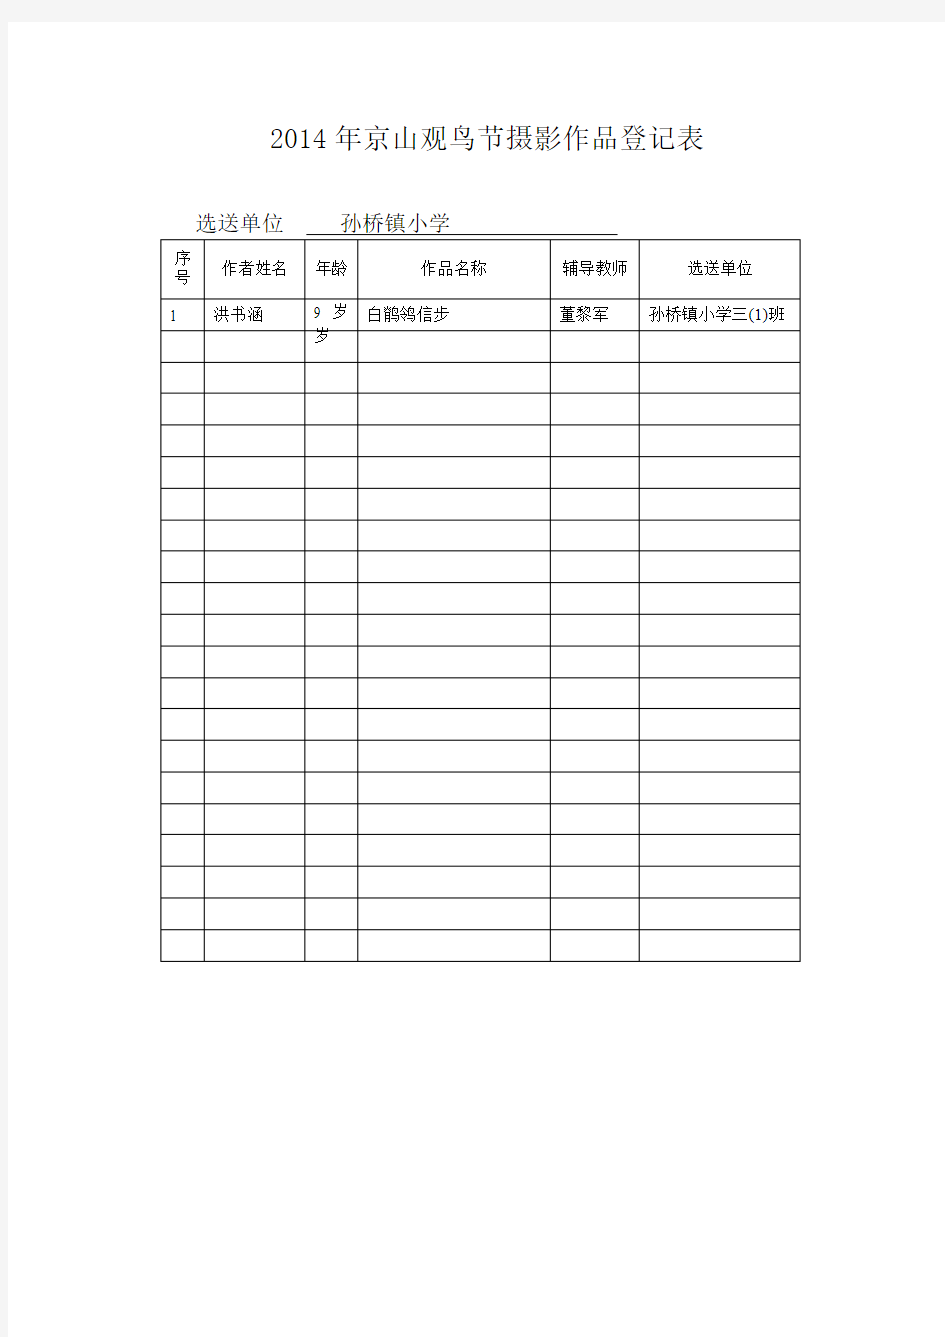 2014年京山观鸟节摄影作品登记表